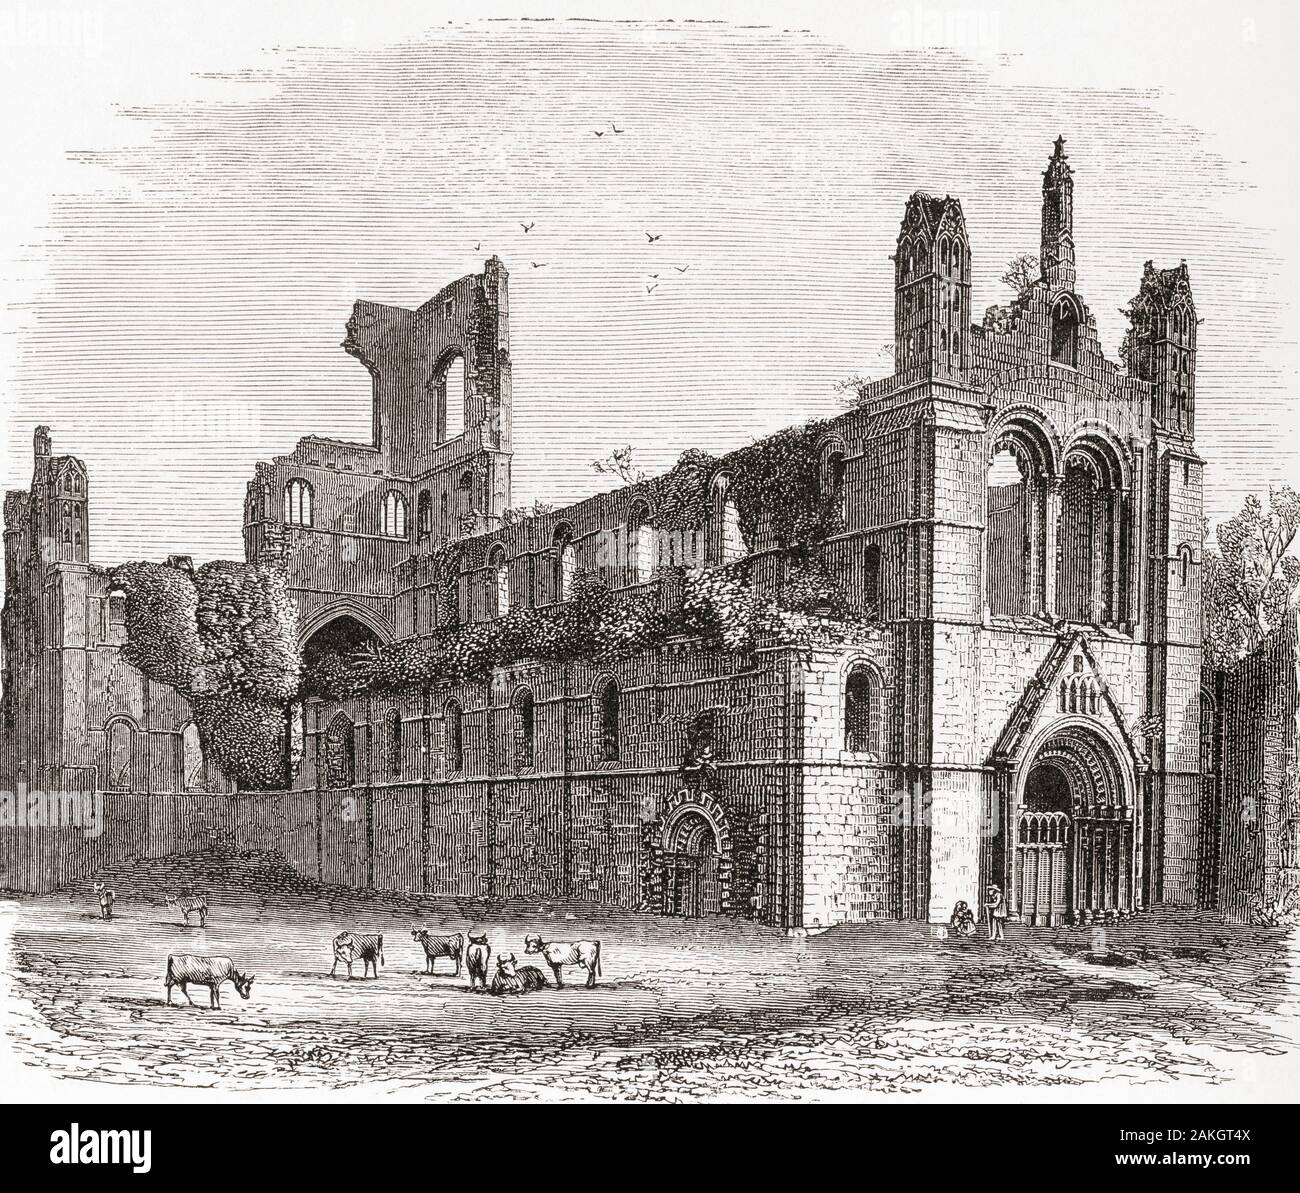 Kirkstall Abbey, The Beeches, Leeds, West Yorkshire, England. Eine ruinierte Zisterzienserkloster aus dem 12. Jahrhundert. Aus dem Englischen Bilder, veröffentlicht 1890. Stockfoto